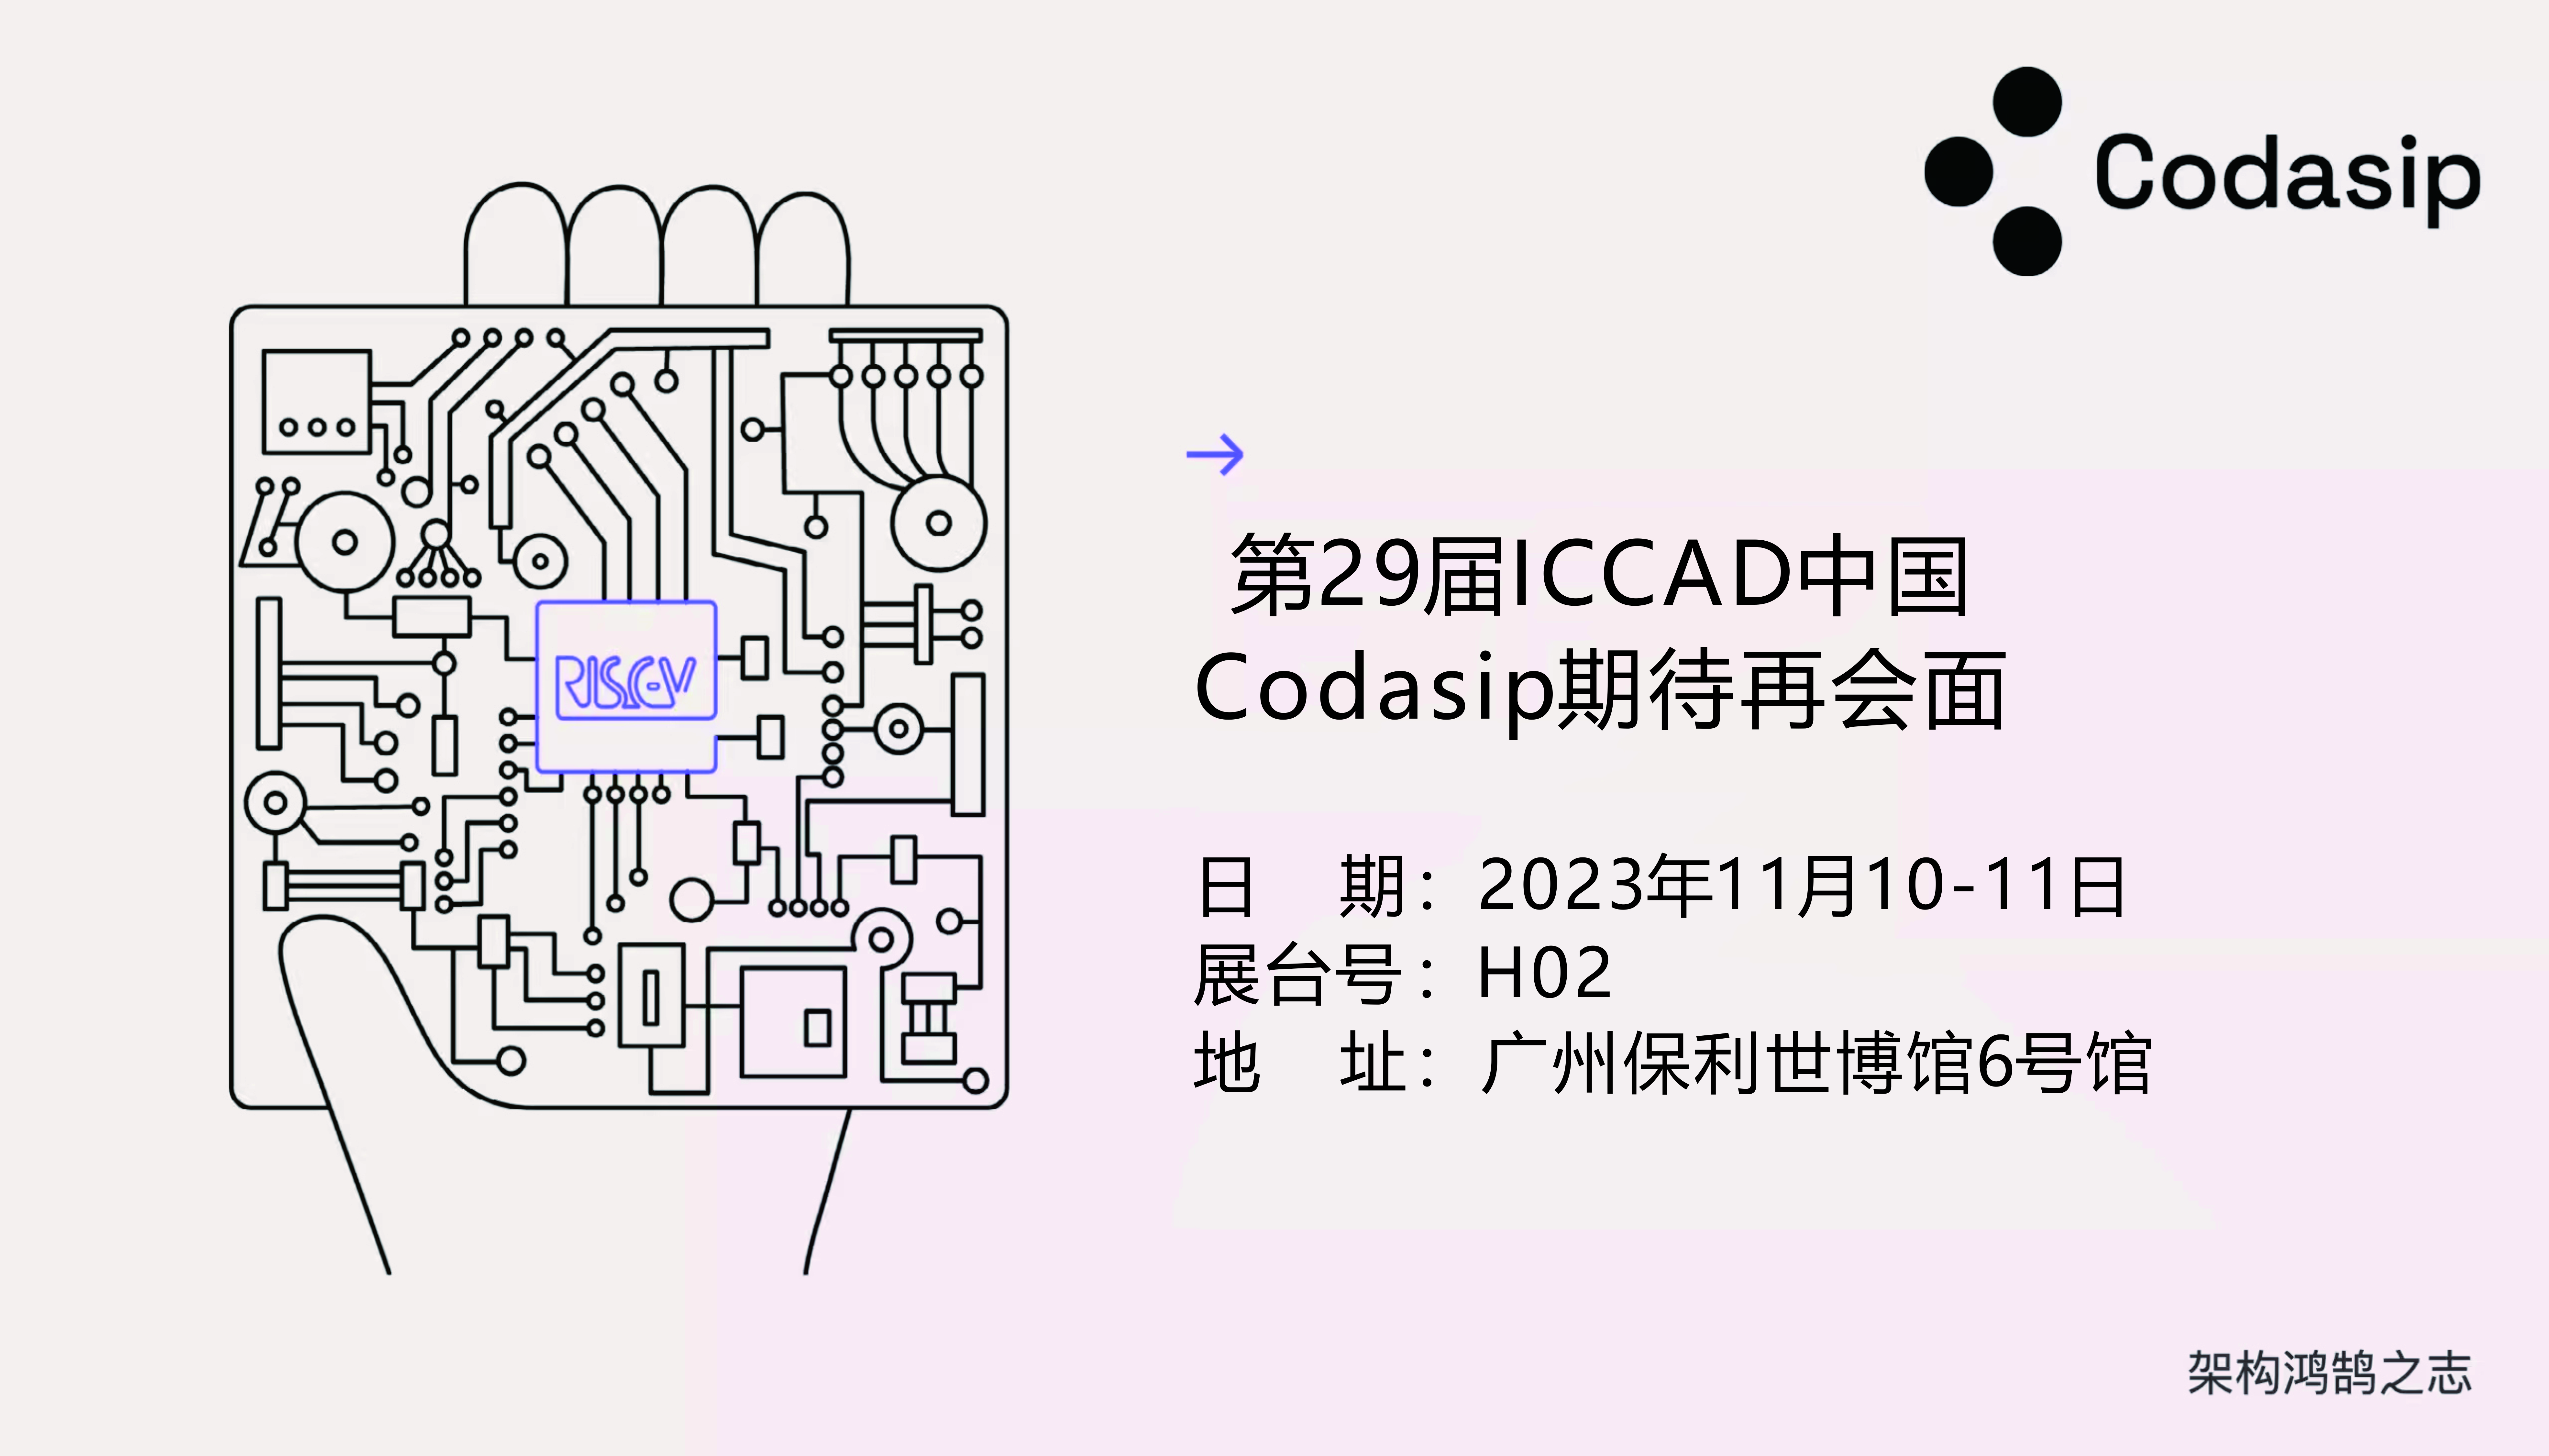 Codasip at ICCAD China 2023